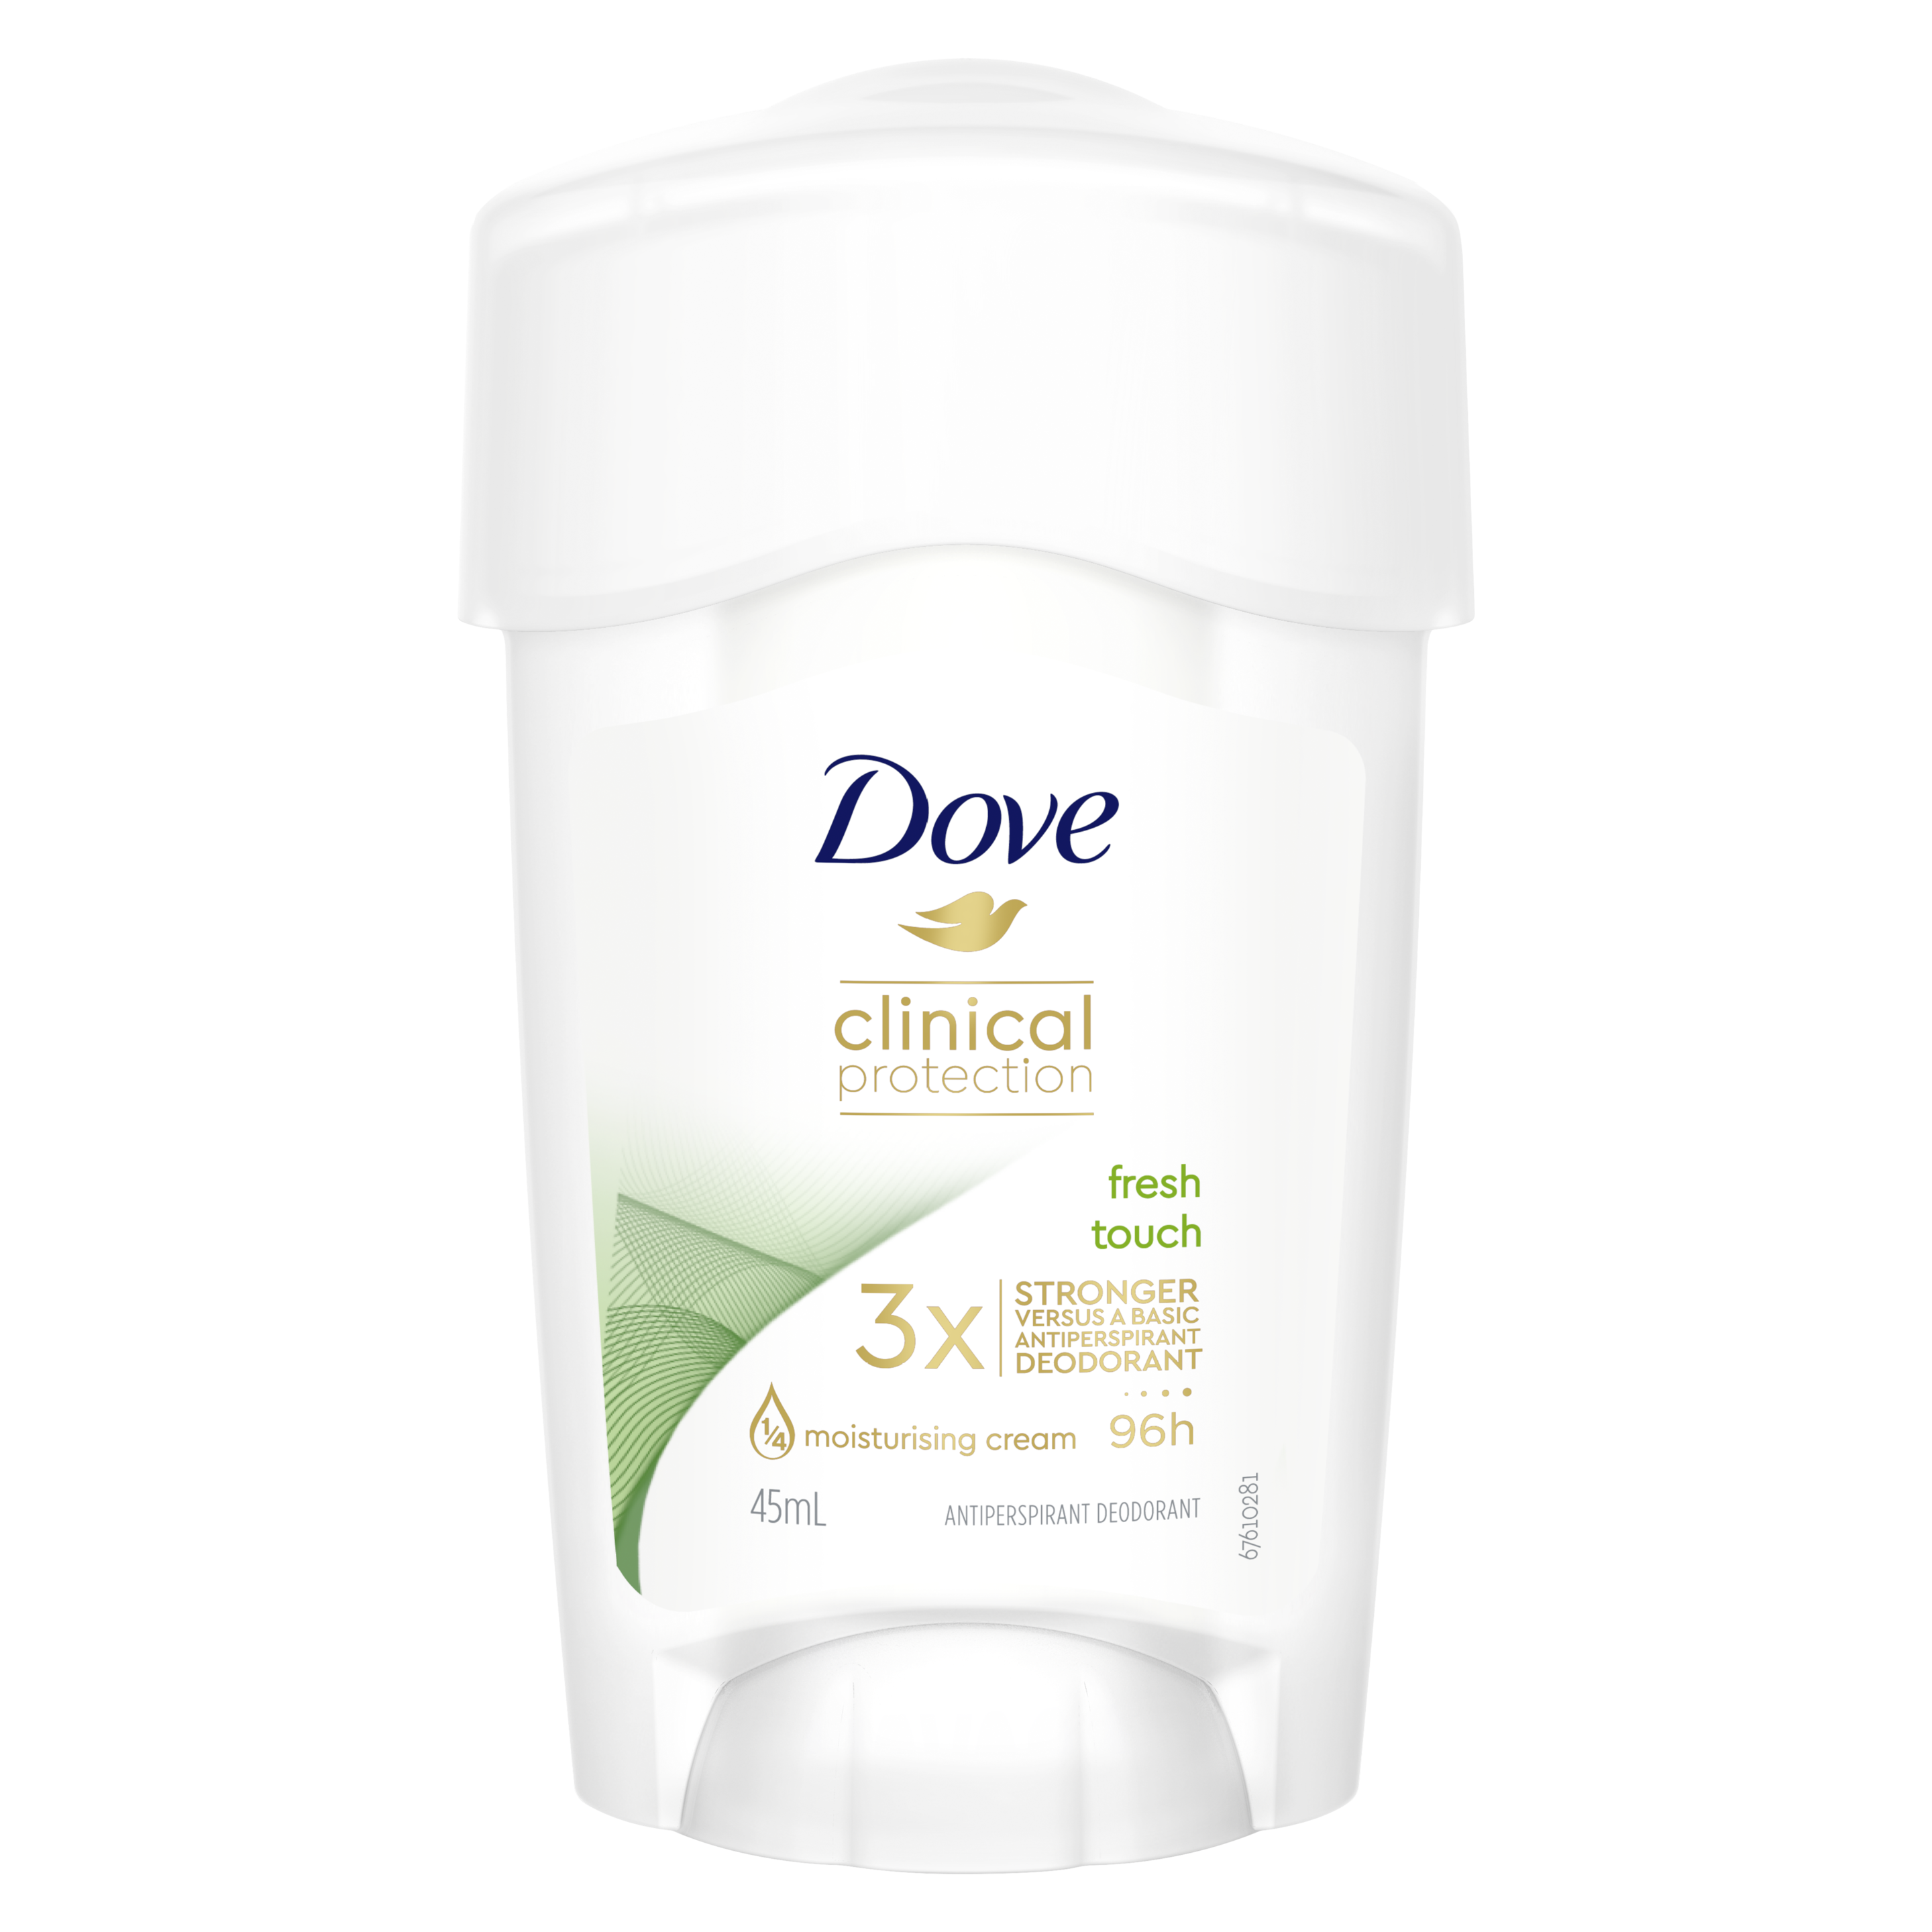 Dove Clinical Protection Go Fresh Deodorant 45ml